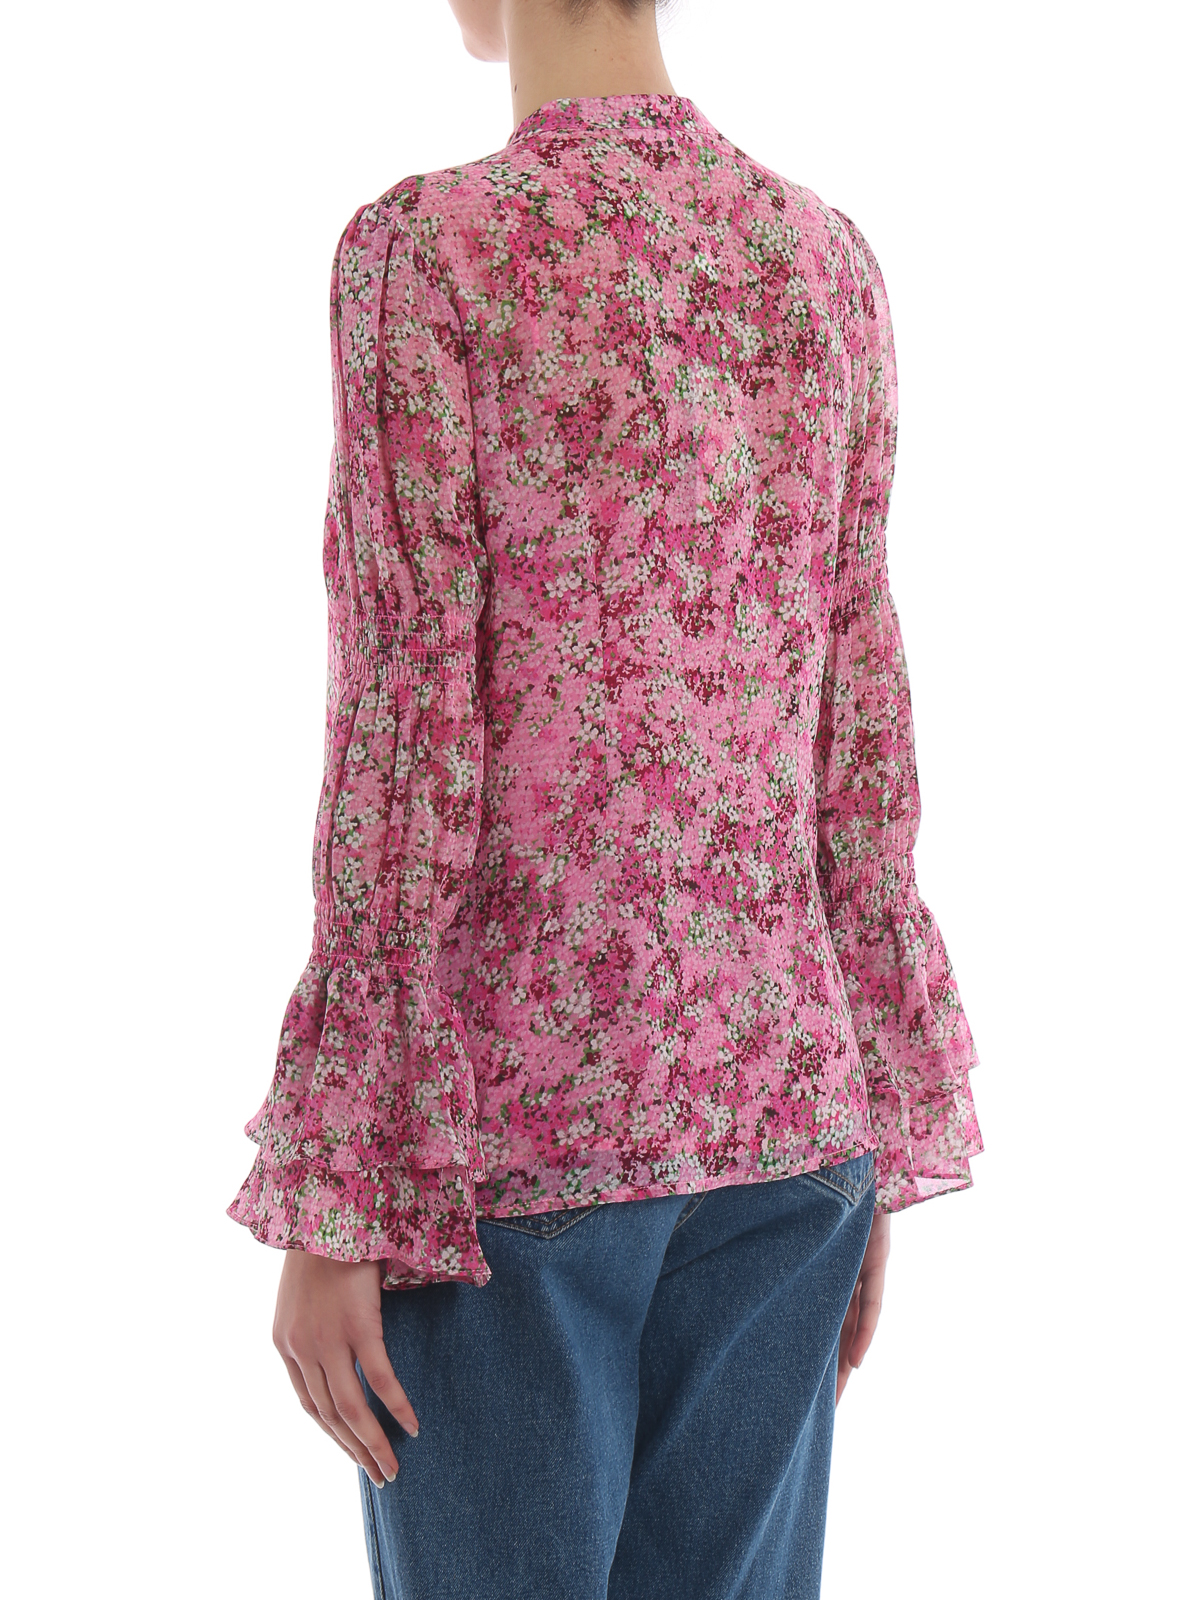 Blouses Michael Kors - Floral print chiffon blouse - MS94LK8AXE654